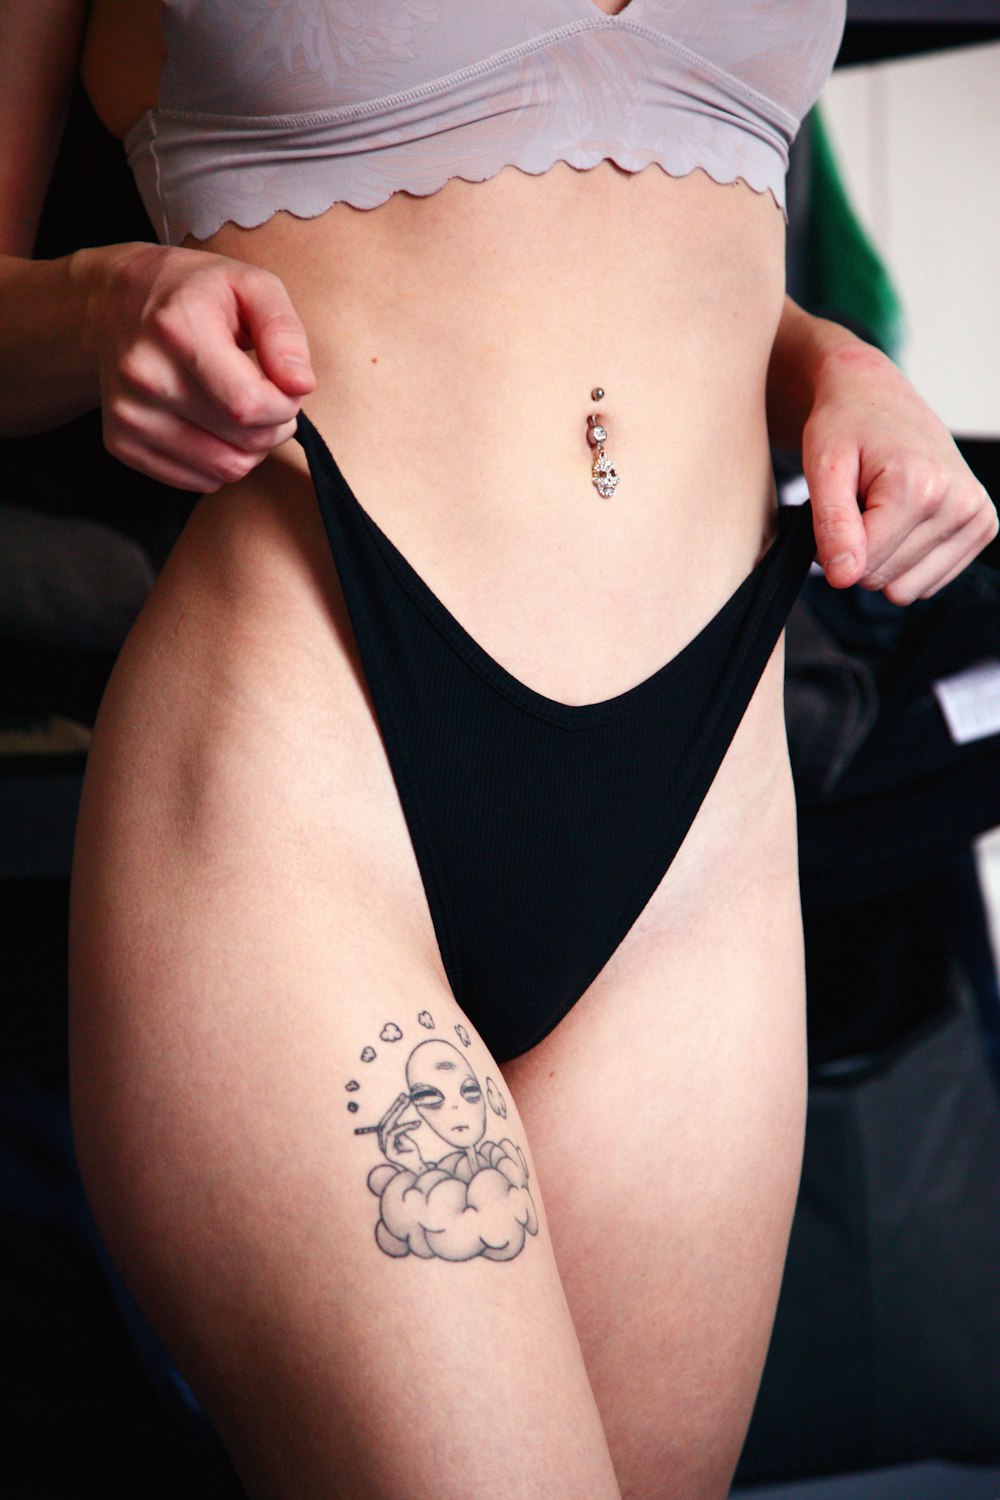 Frau in schwarzem Büstenhalter mit Tattoo auf dem Rücken